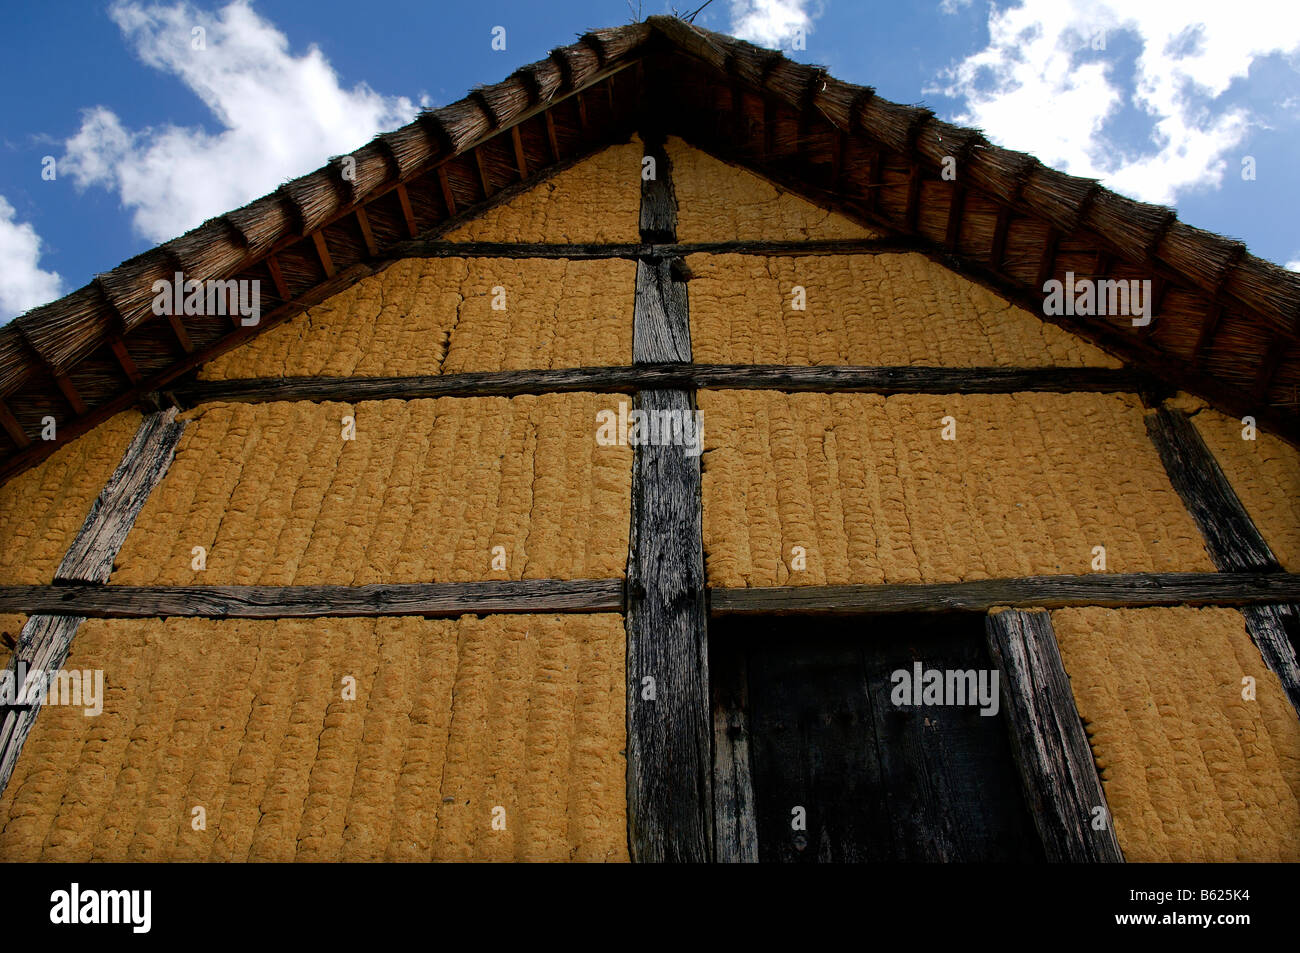 La antigua fachada de una acacia y daub paredes entramadas con techo de paja, 1561), eco-museo, Ungersheim, Alsacia, Francia, Europa Foto de stock